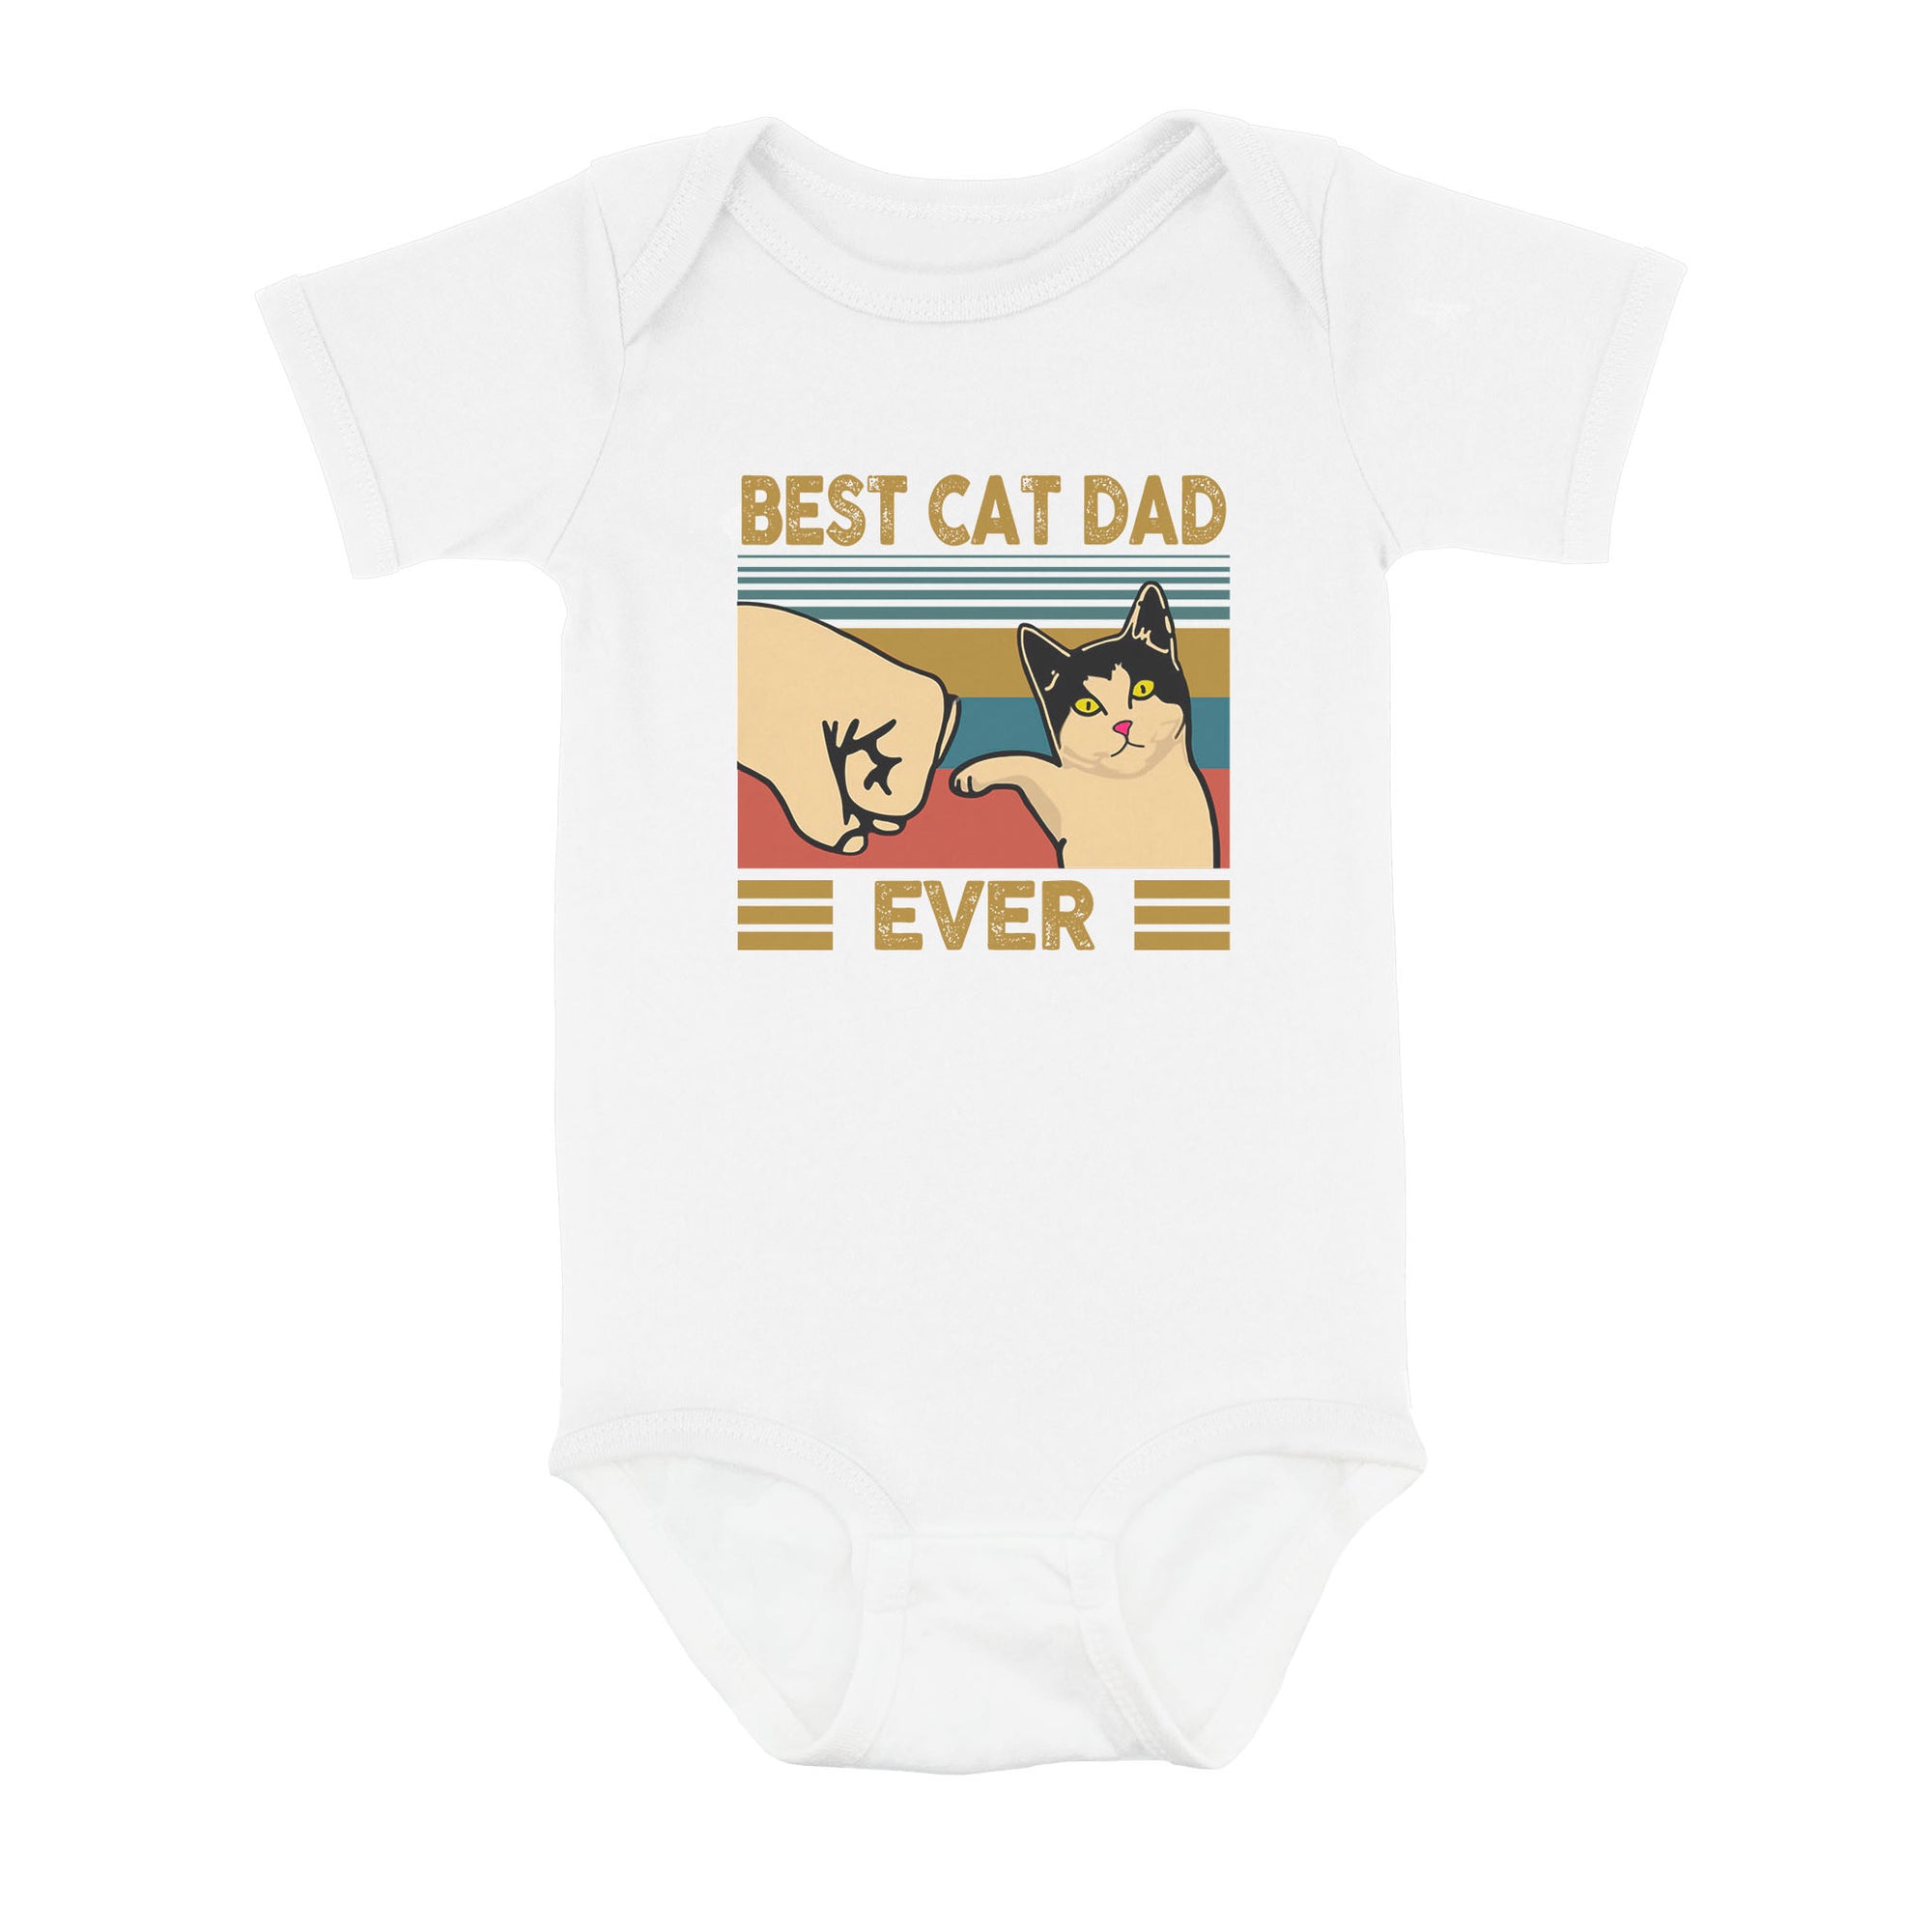 Best Cat Dad Ever - Baby Onesie